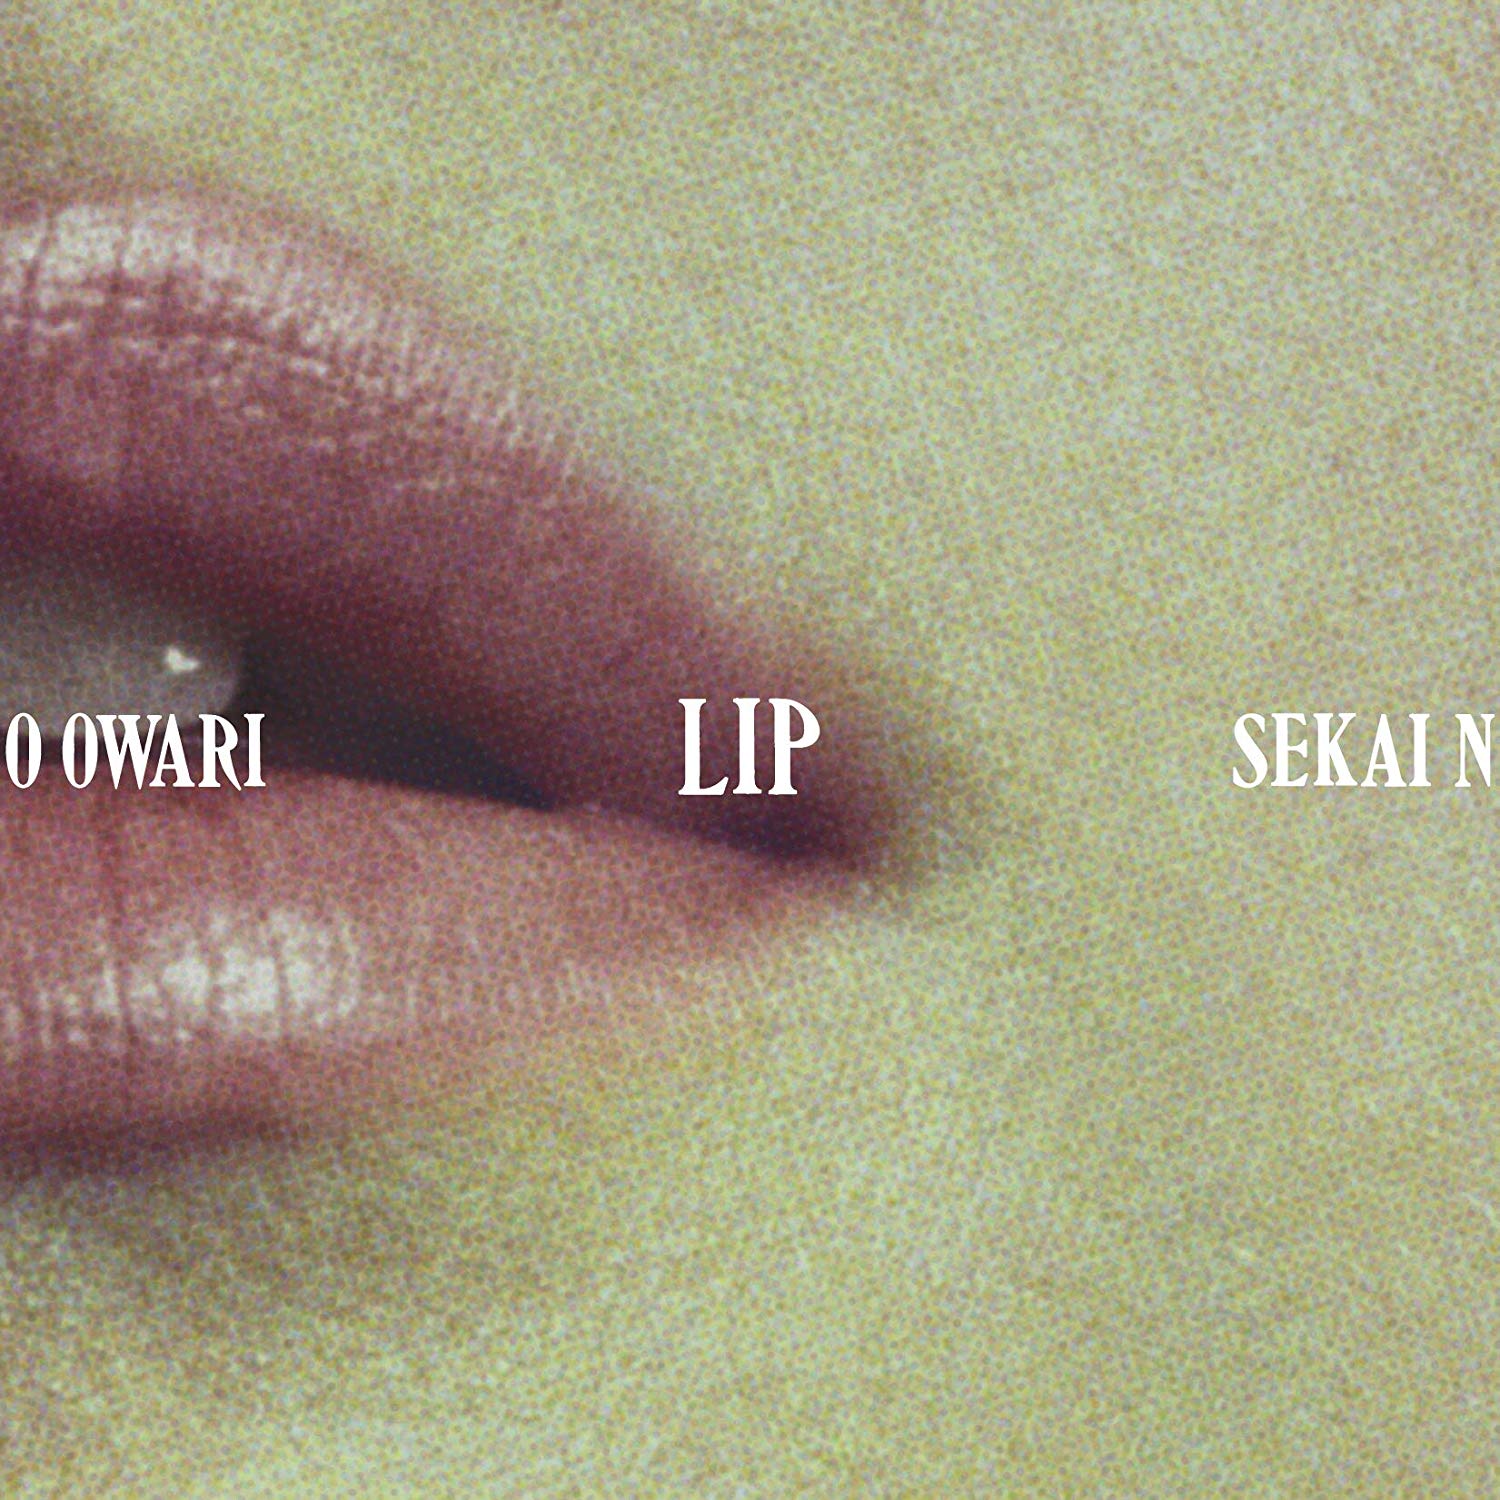 Sekai No Owari Eye Lip 目が語るものと口が語るもの 表裏一体のイメージのアルバム Mikiki